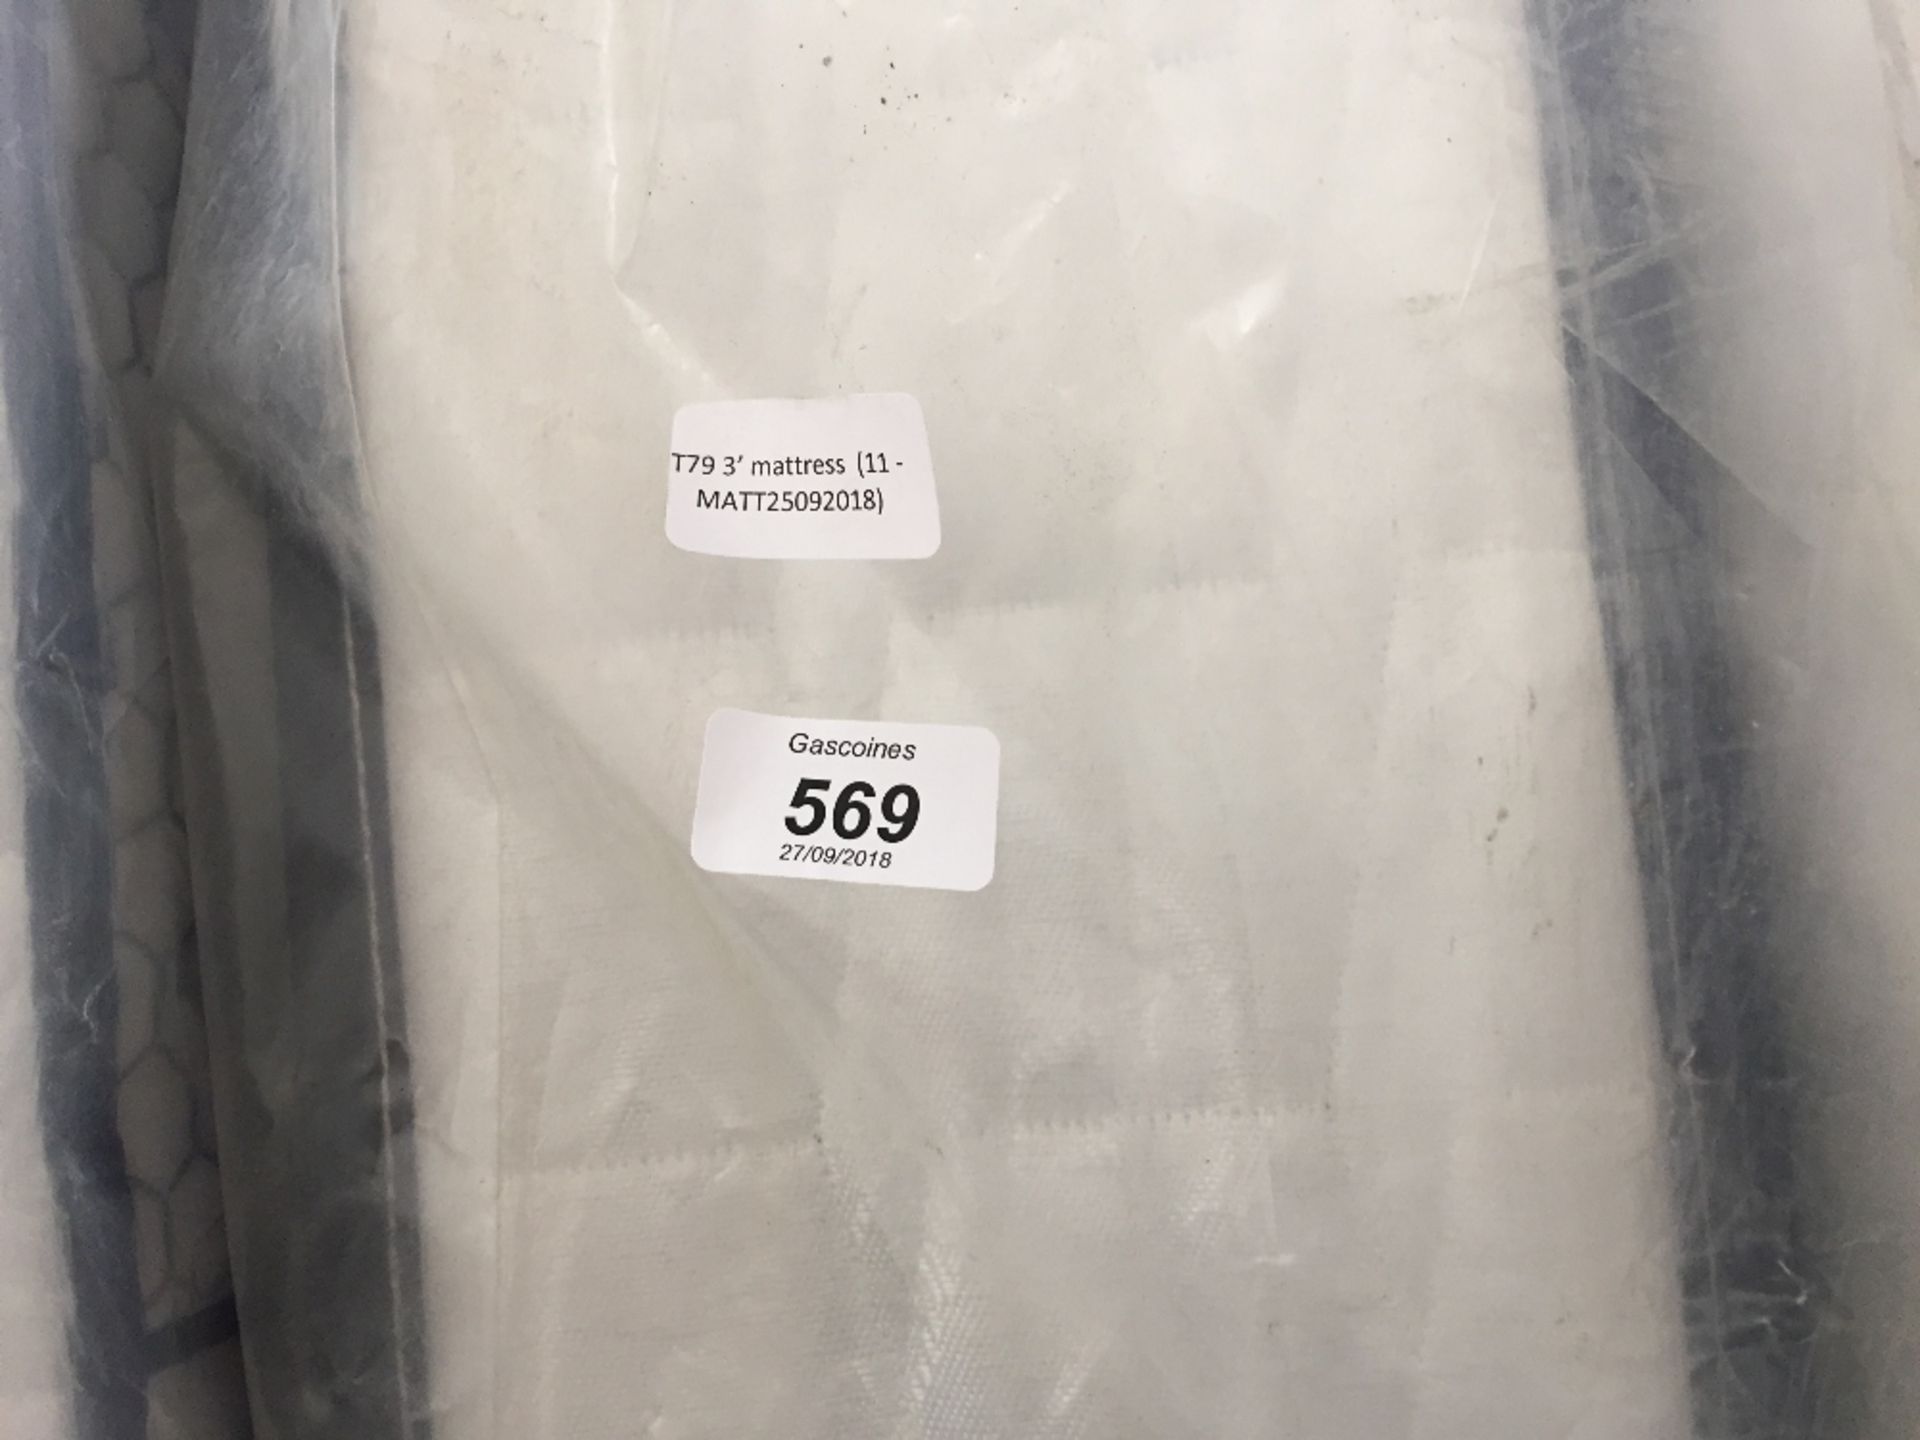 3’ mattress (11 - MATT25092018)